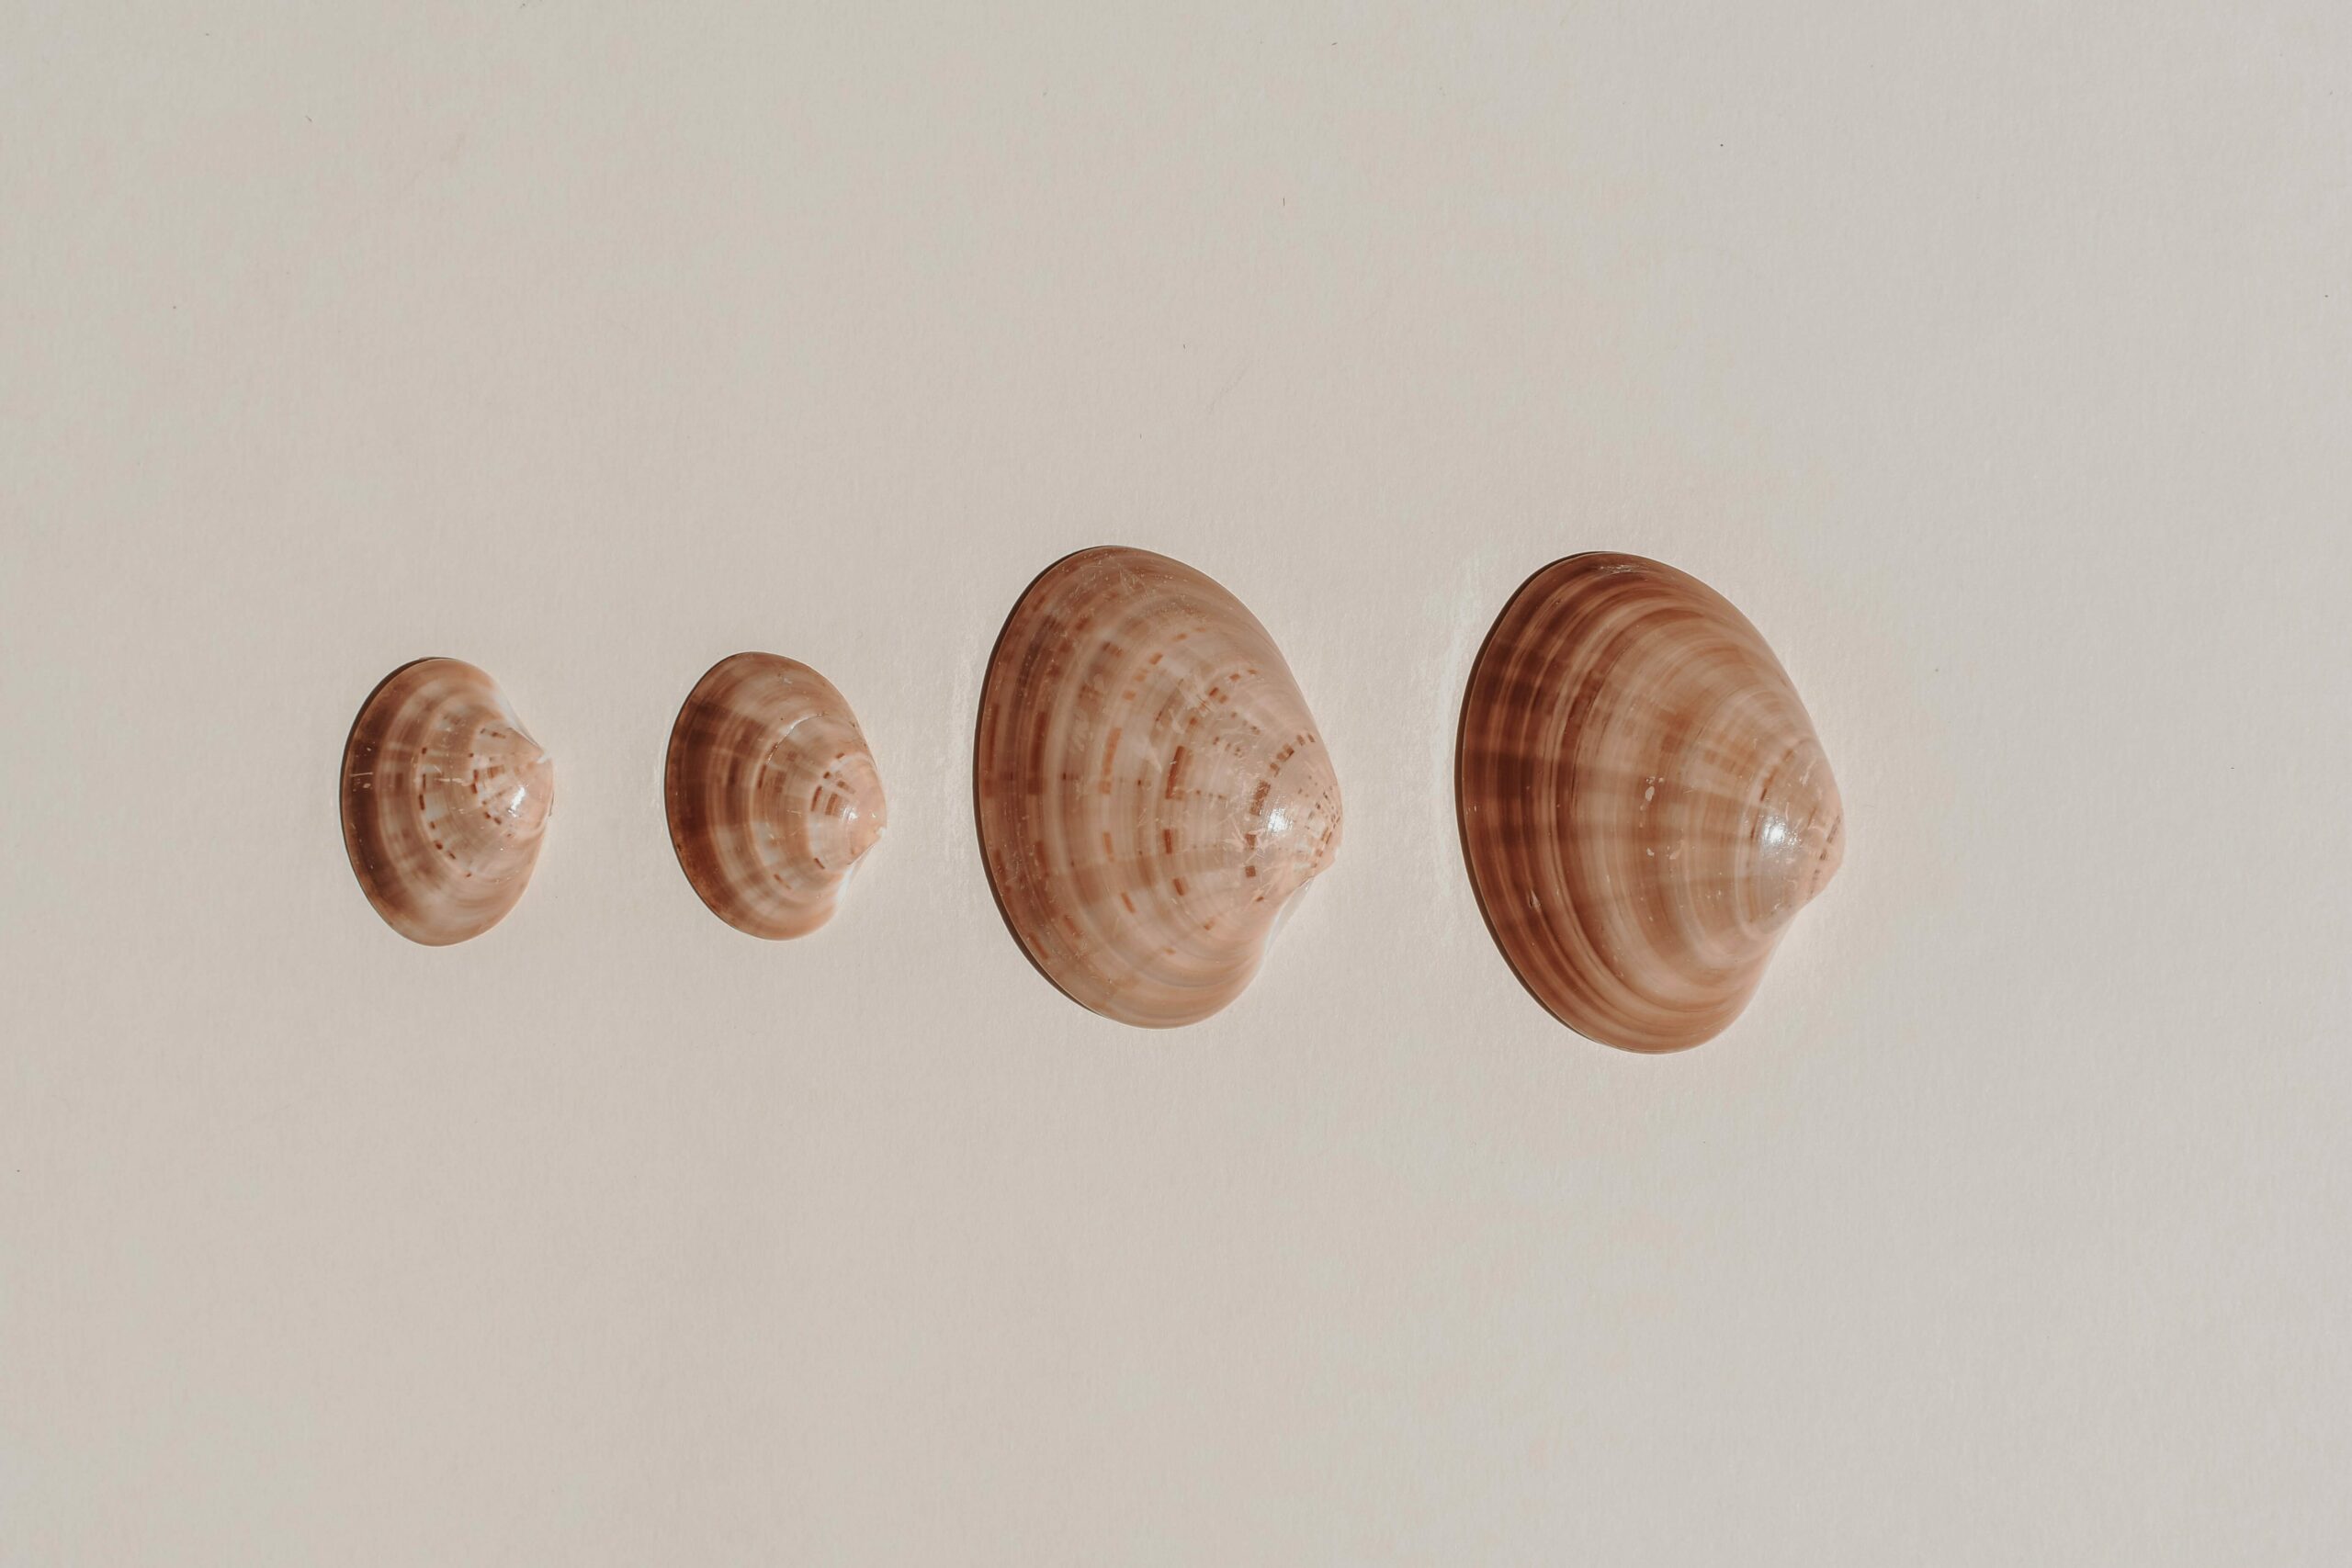 quahog clams